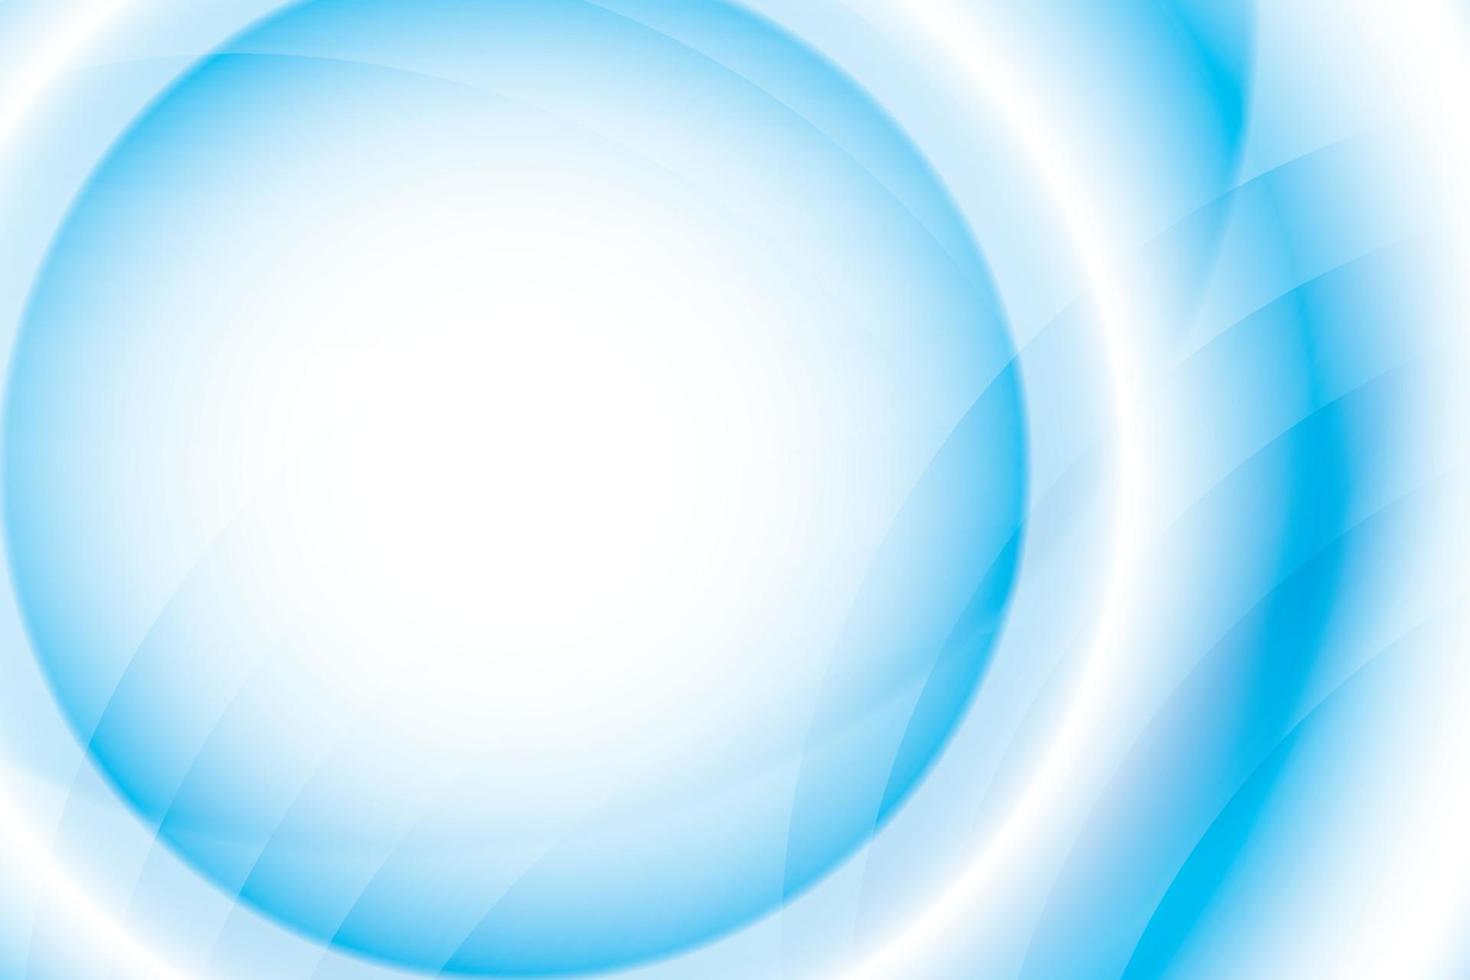 couleur blanche et bleue abstraite, fond de rayures de conception moderne avec une forme ronde géométrique. illustration vectorielle. vecteur